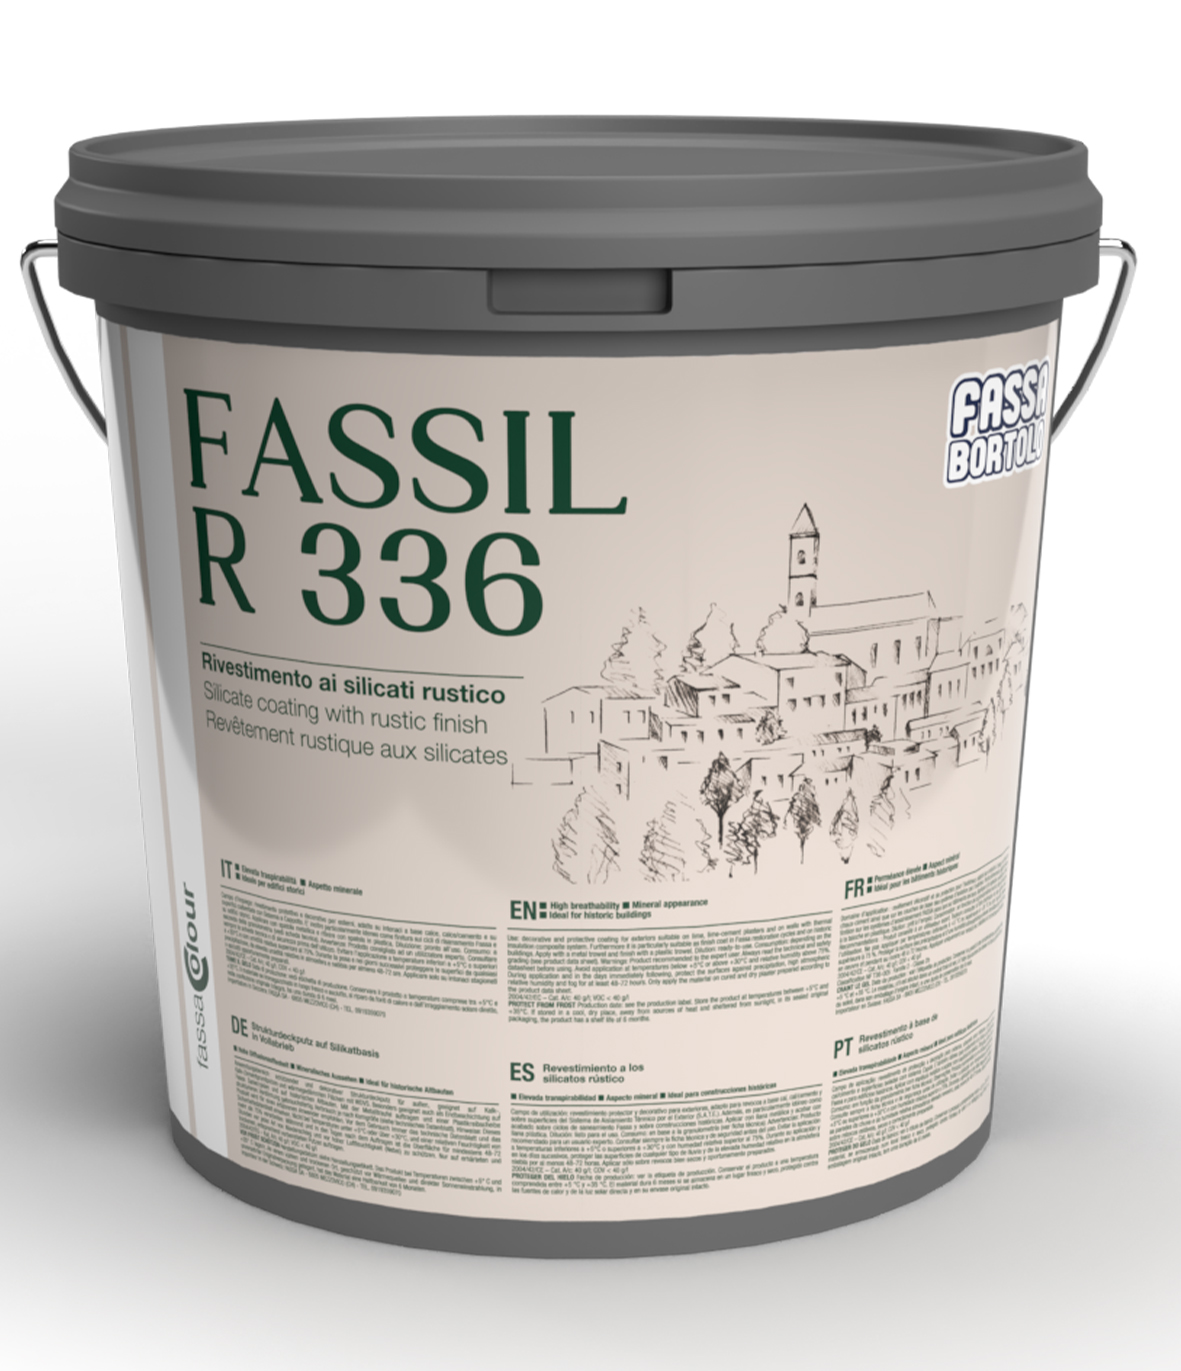 FASSIL R 336: Revestimiento mineral a base de silicatos rústico